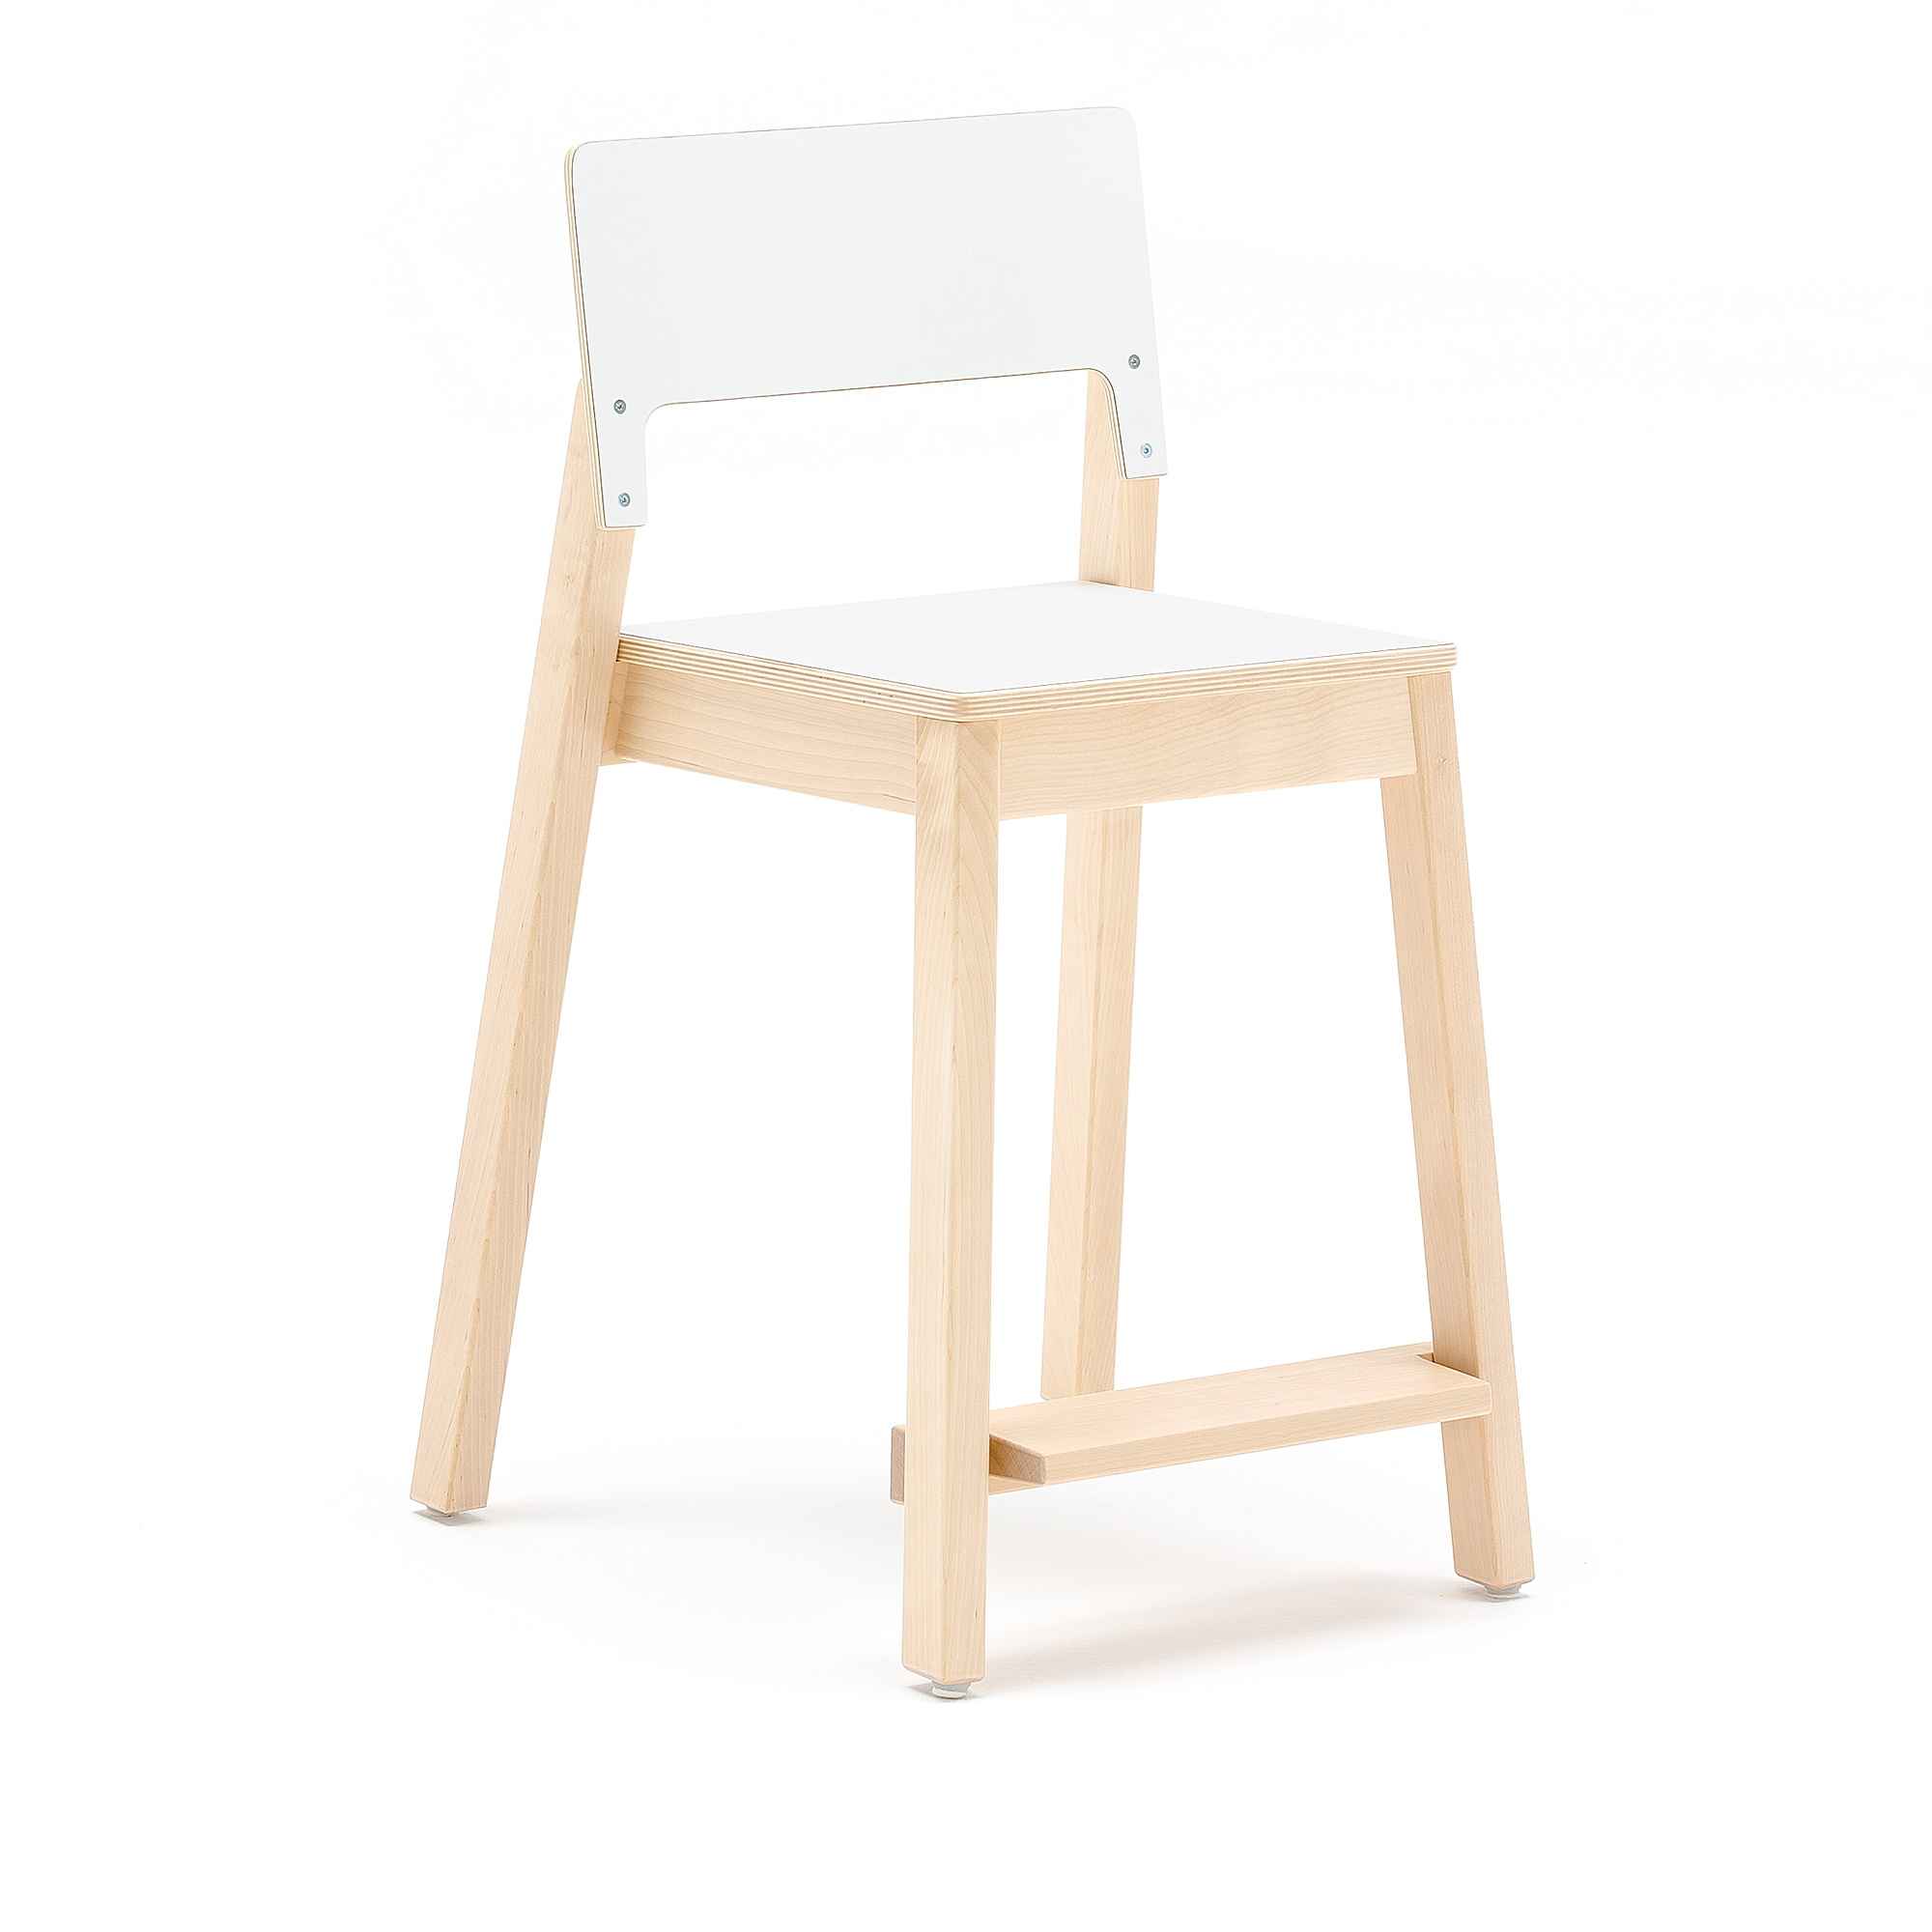 Vysoká dětská židle LOVE, výška 500 mm, bříza, bílá